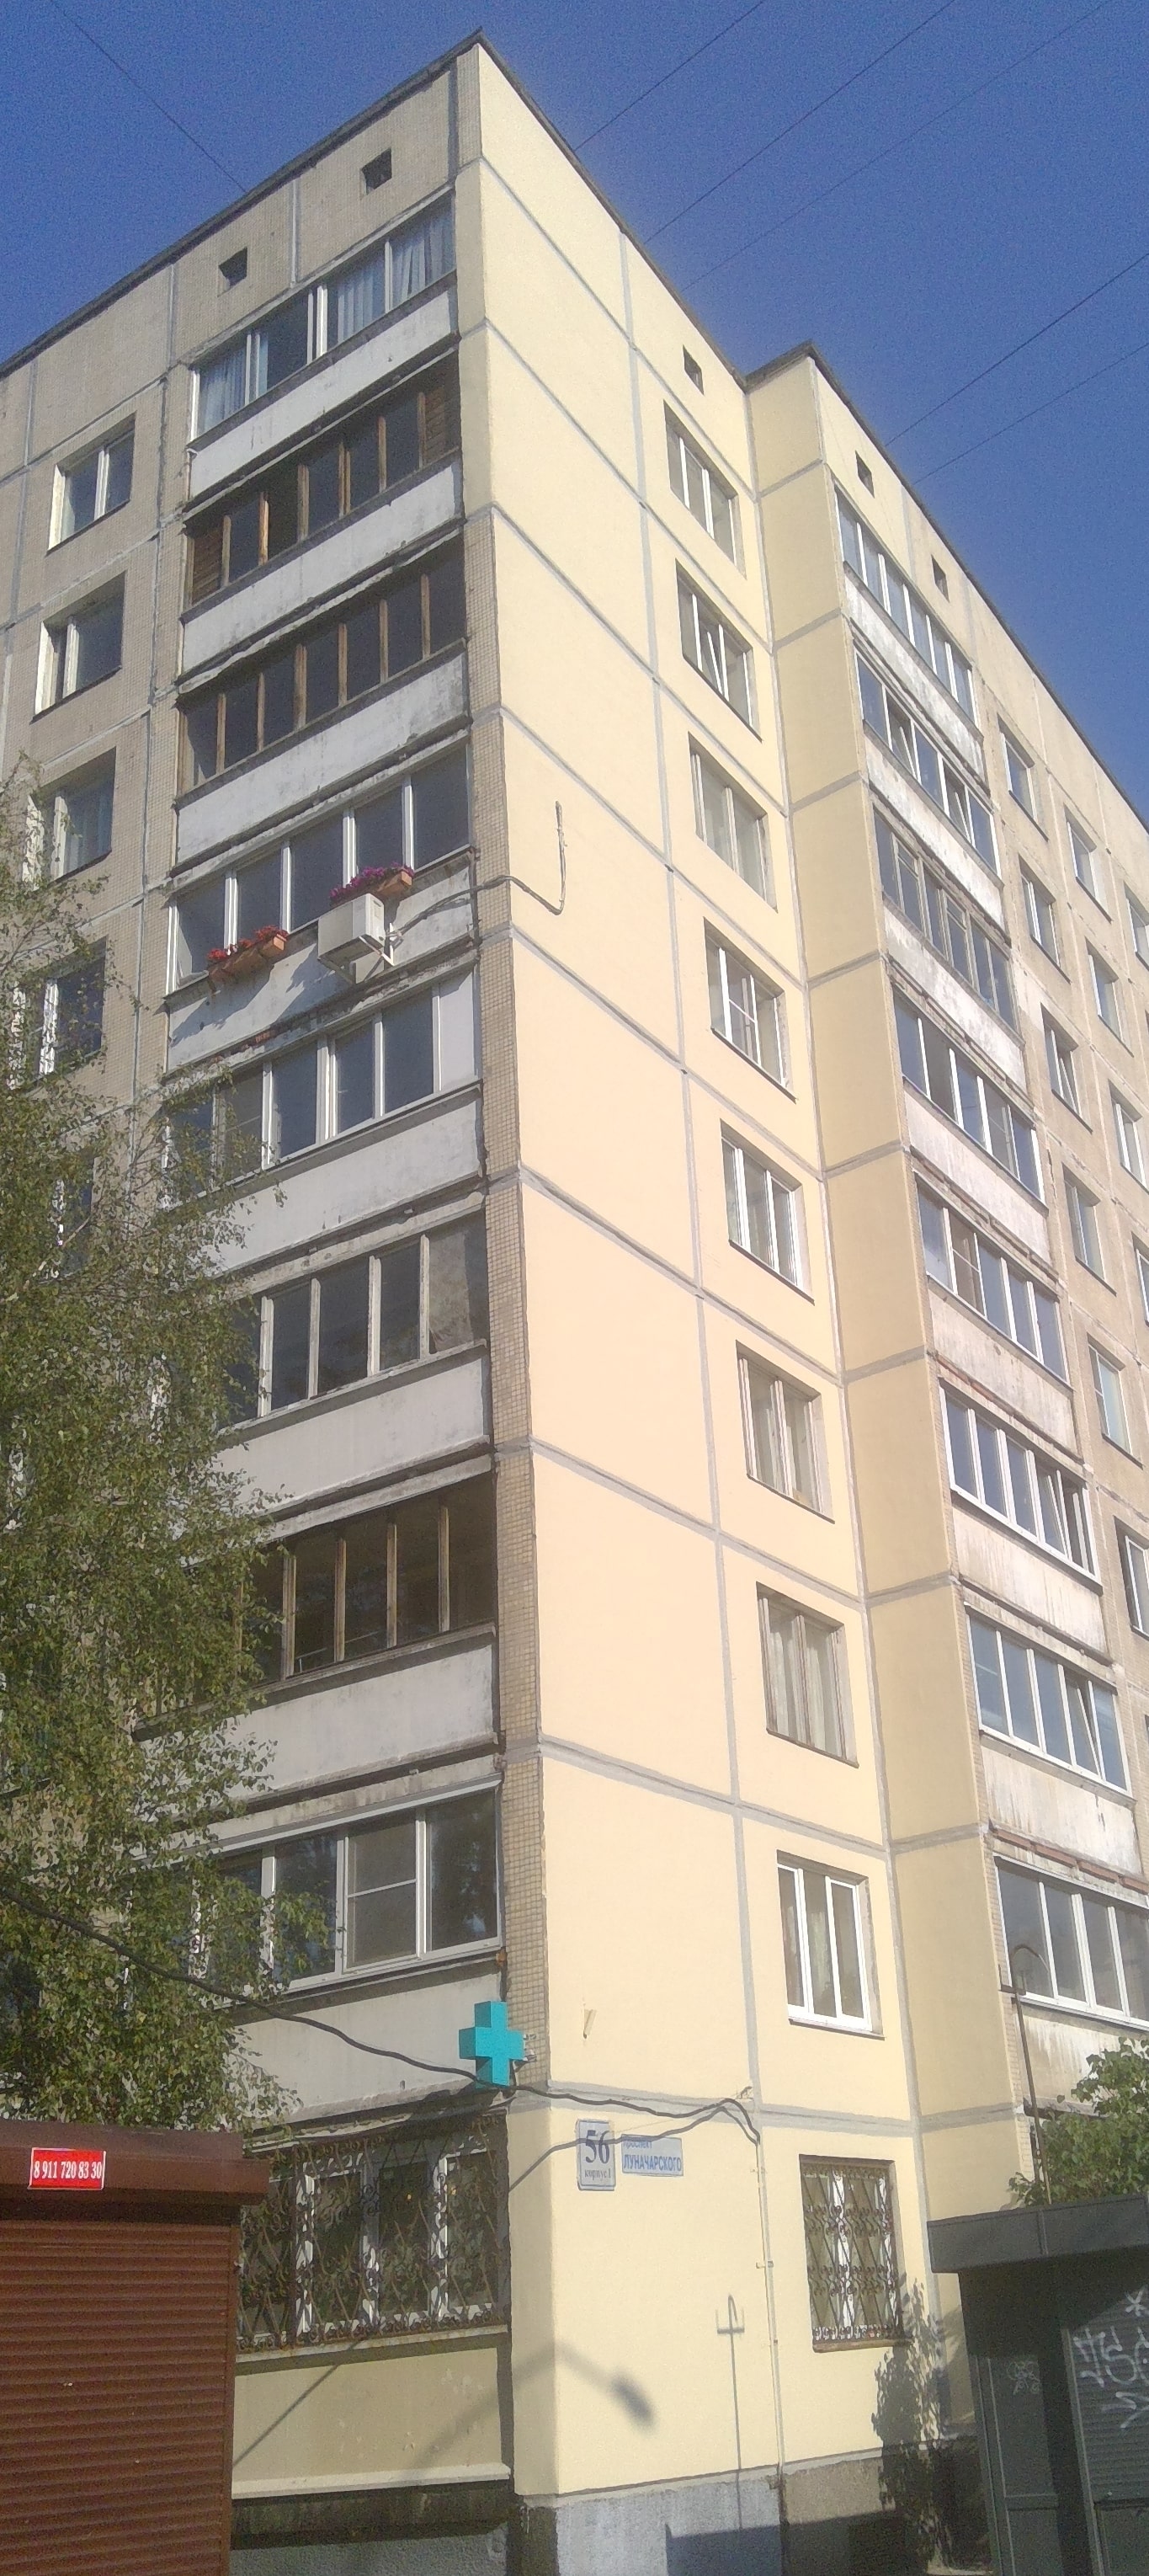 Ремонт фасада пр. Луначарского д. 56 корп. 1 (торец 7 пар.)